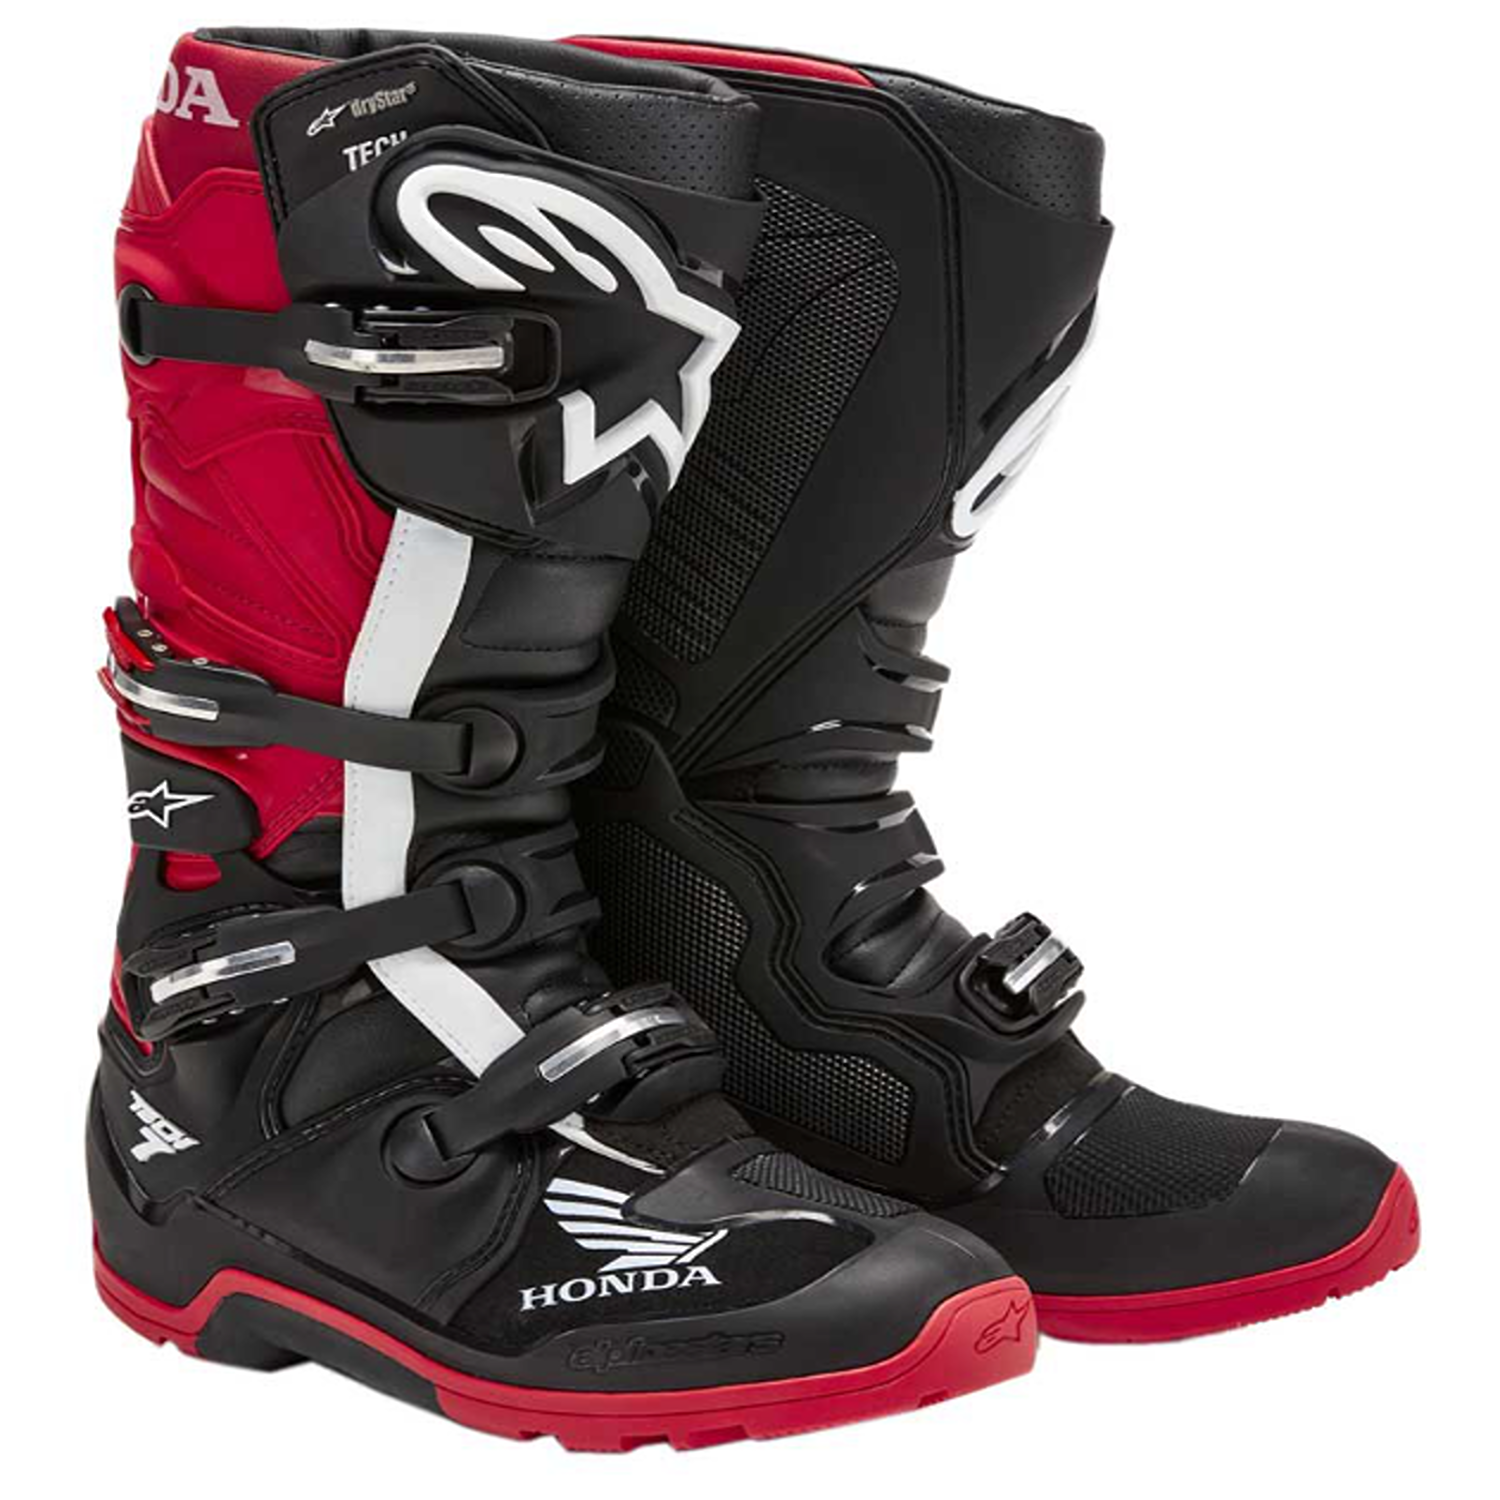 Image of Alpinestars Honda Tech 7 Enduro Drystar Boots Black Bright Red Größe US 10